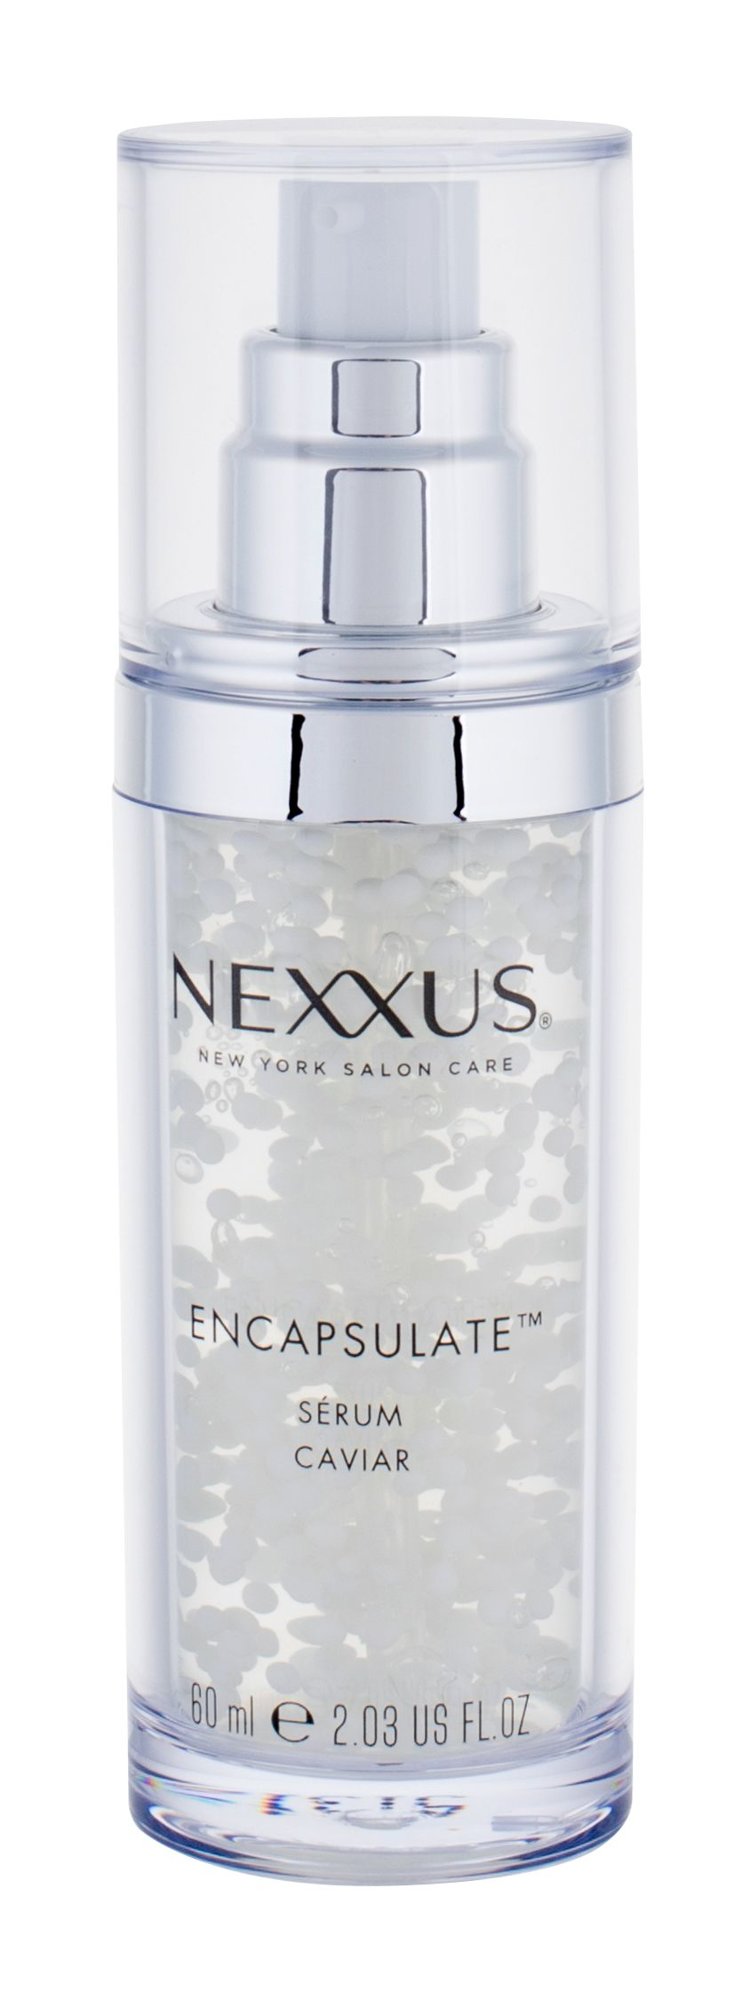 NEXXUS Humectress Encapsulate Caviar Serum